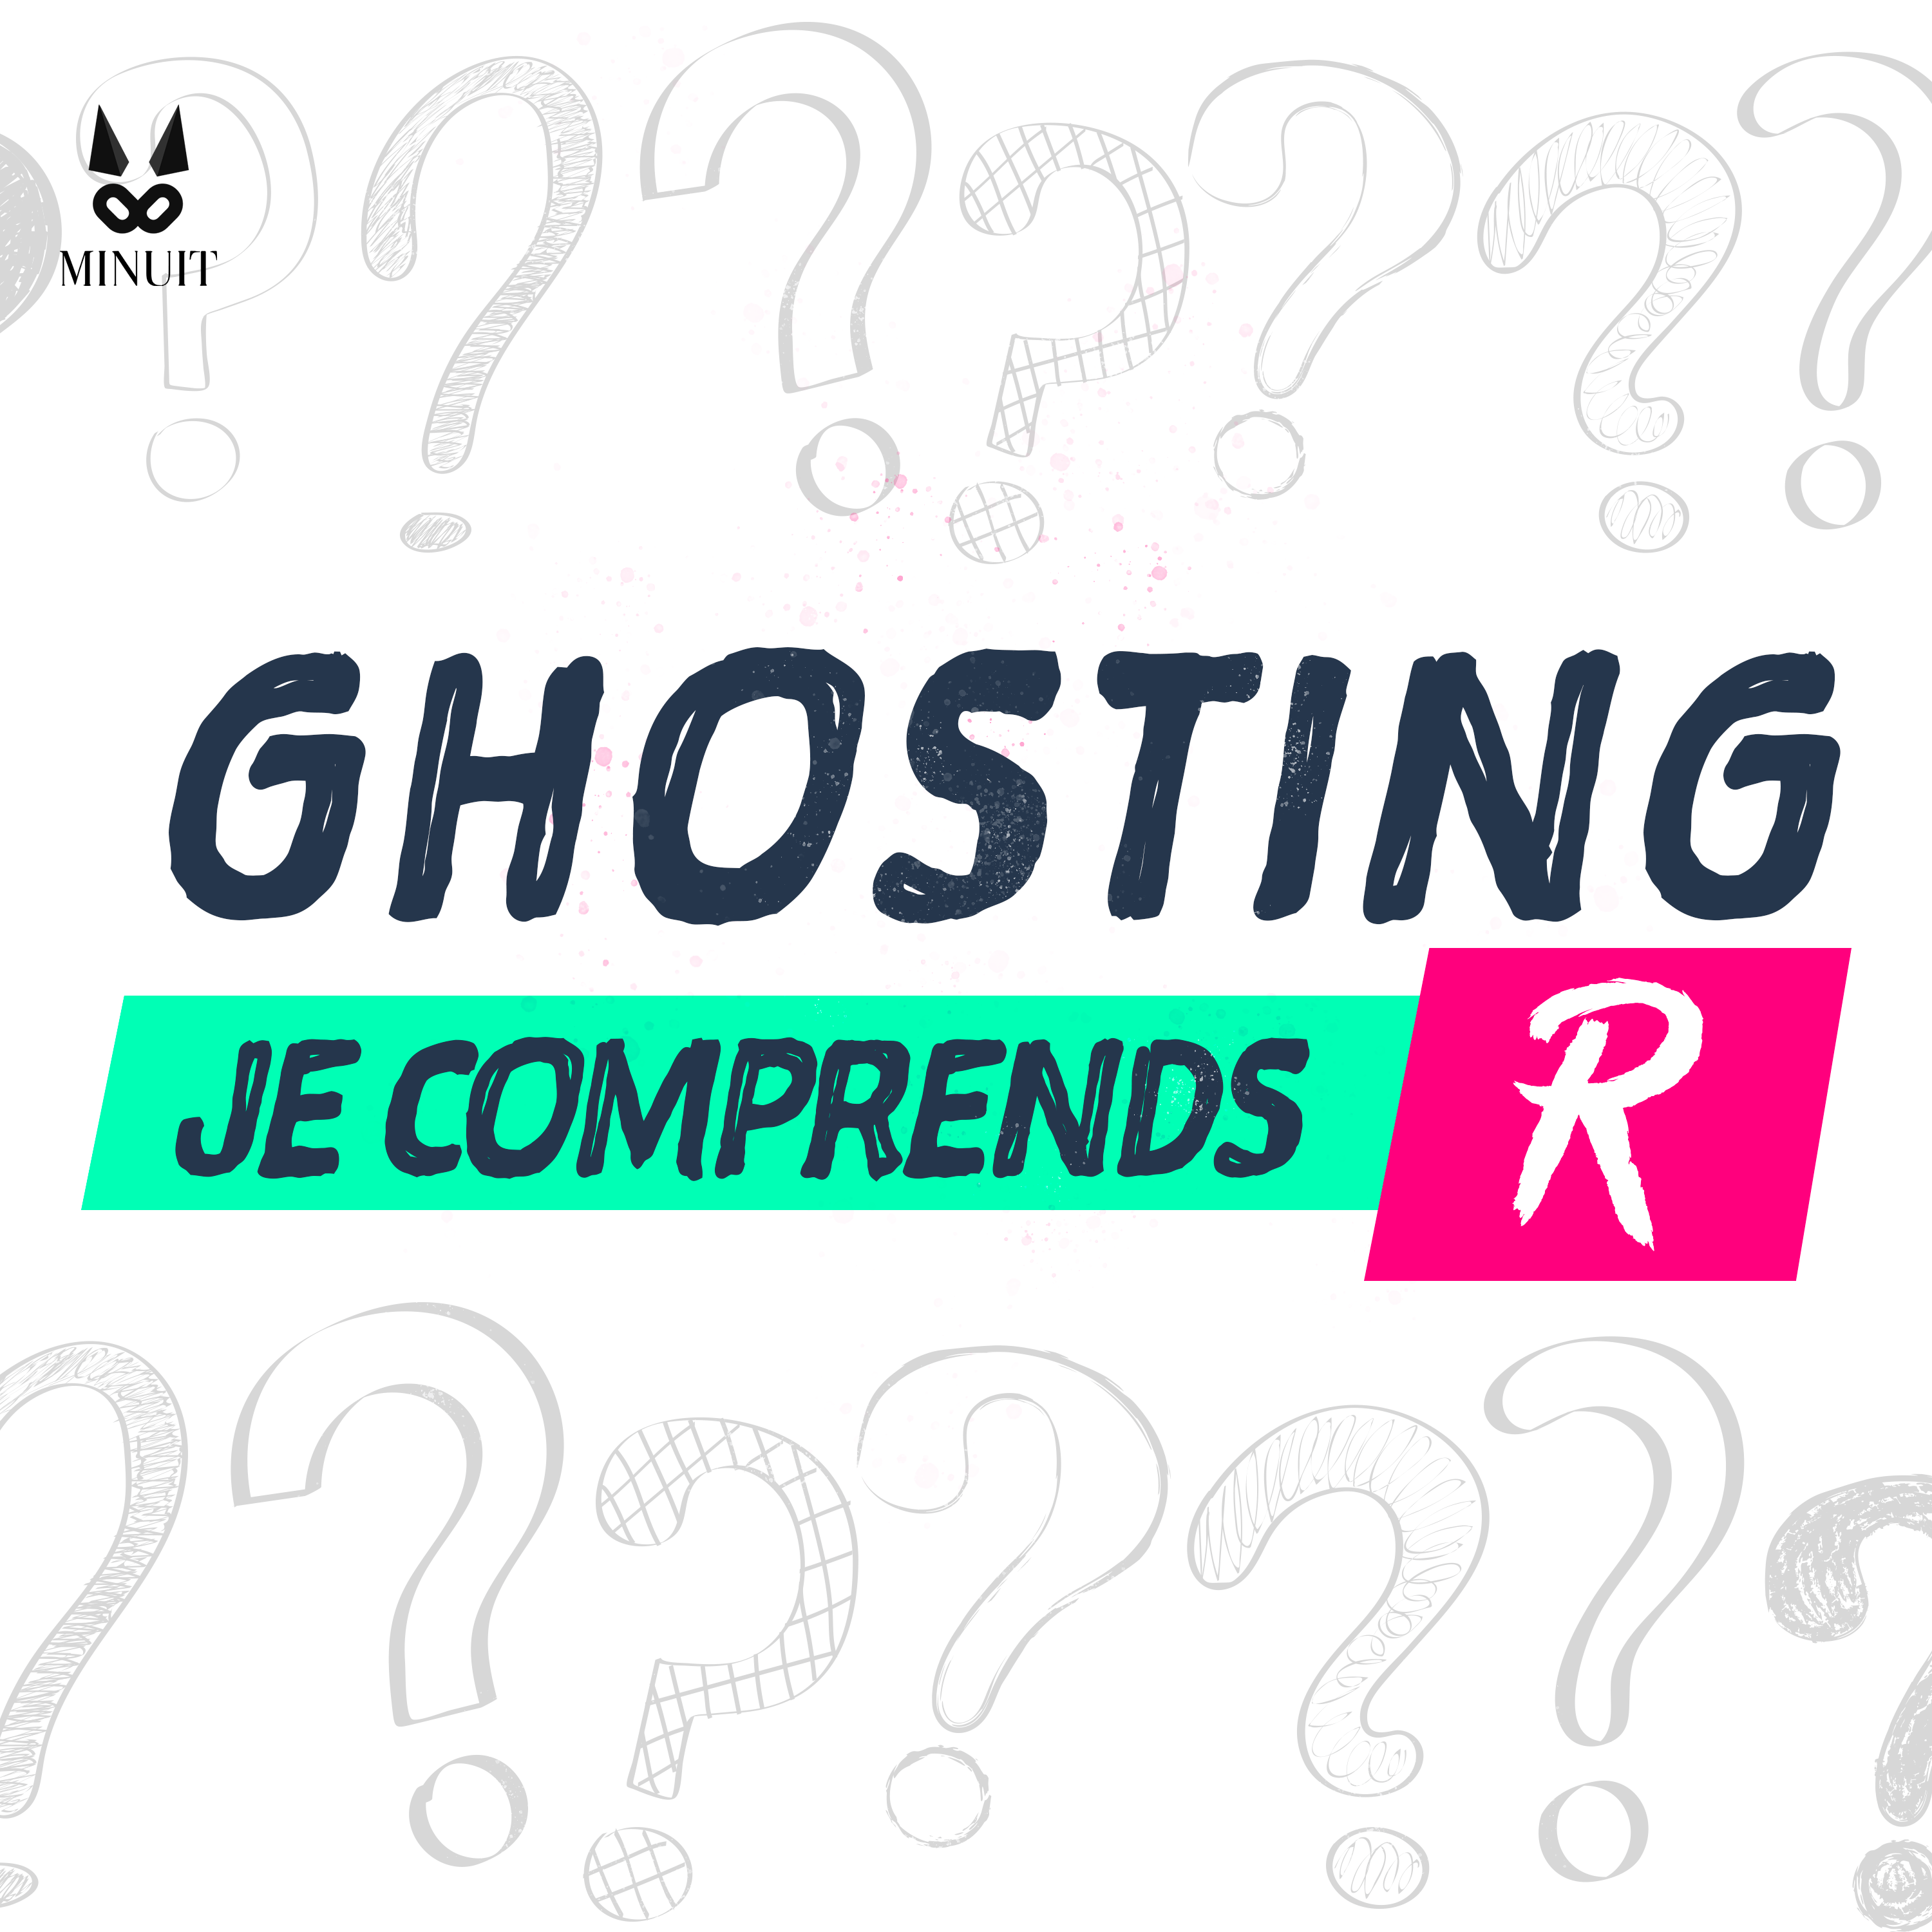 JE COMPRENDS R : Ghosting